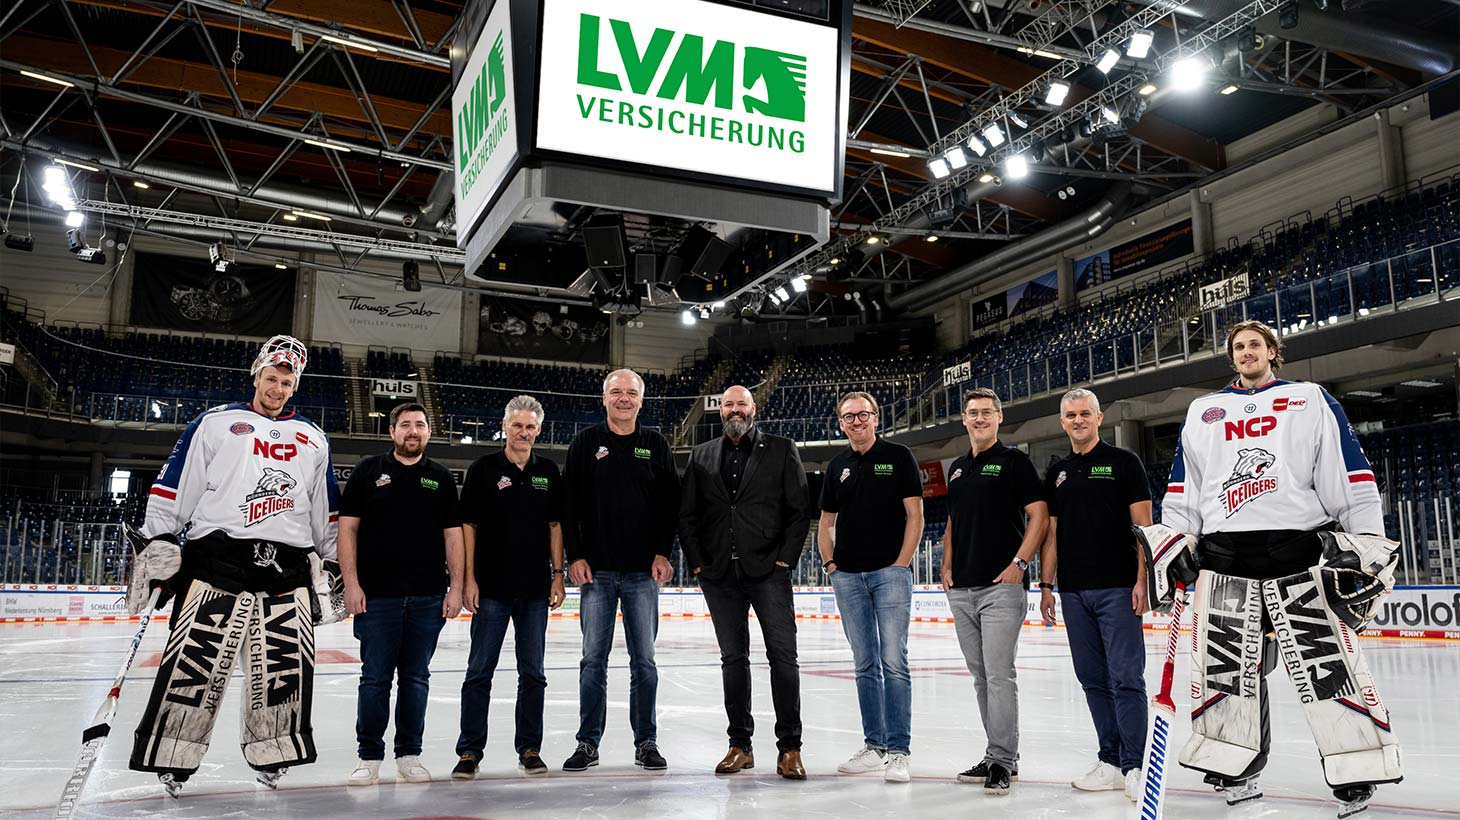 LVM Versicherung bleibt Exklusivpartner Nürnberg Ice Tigers